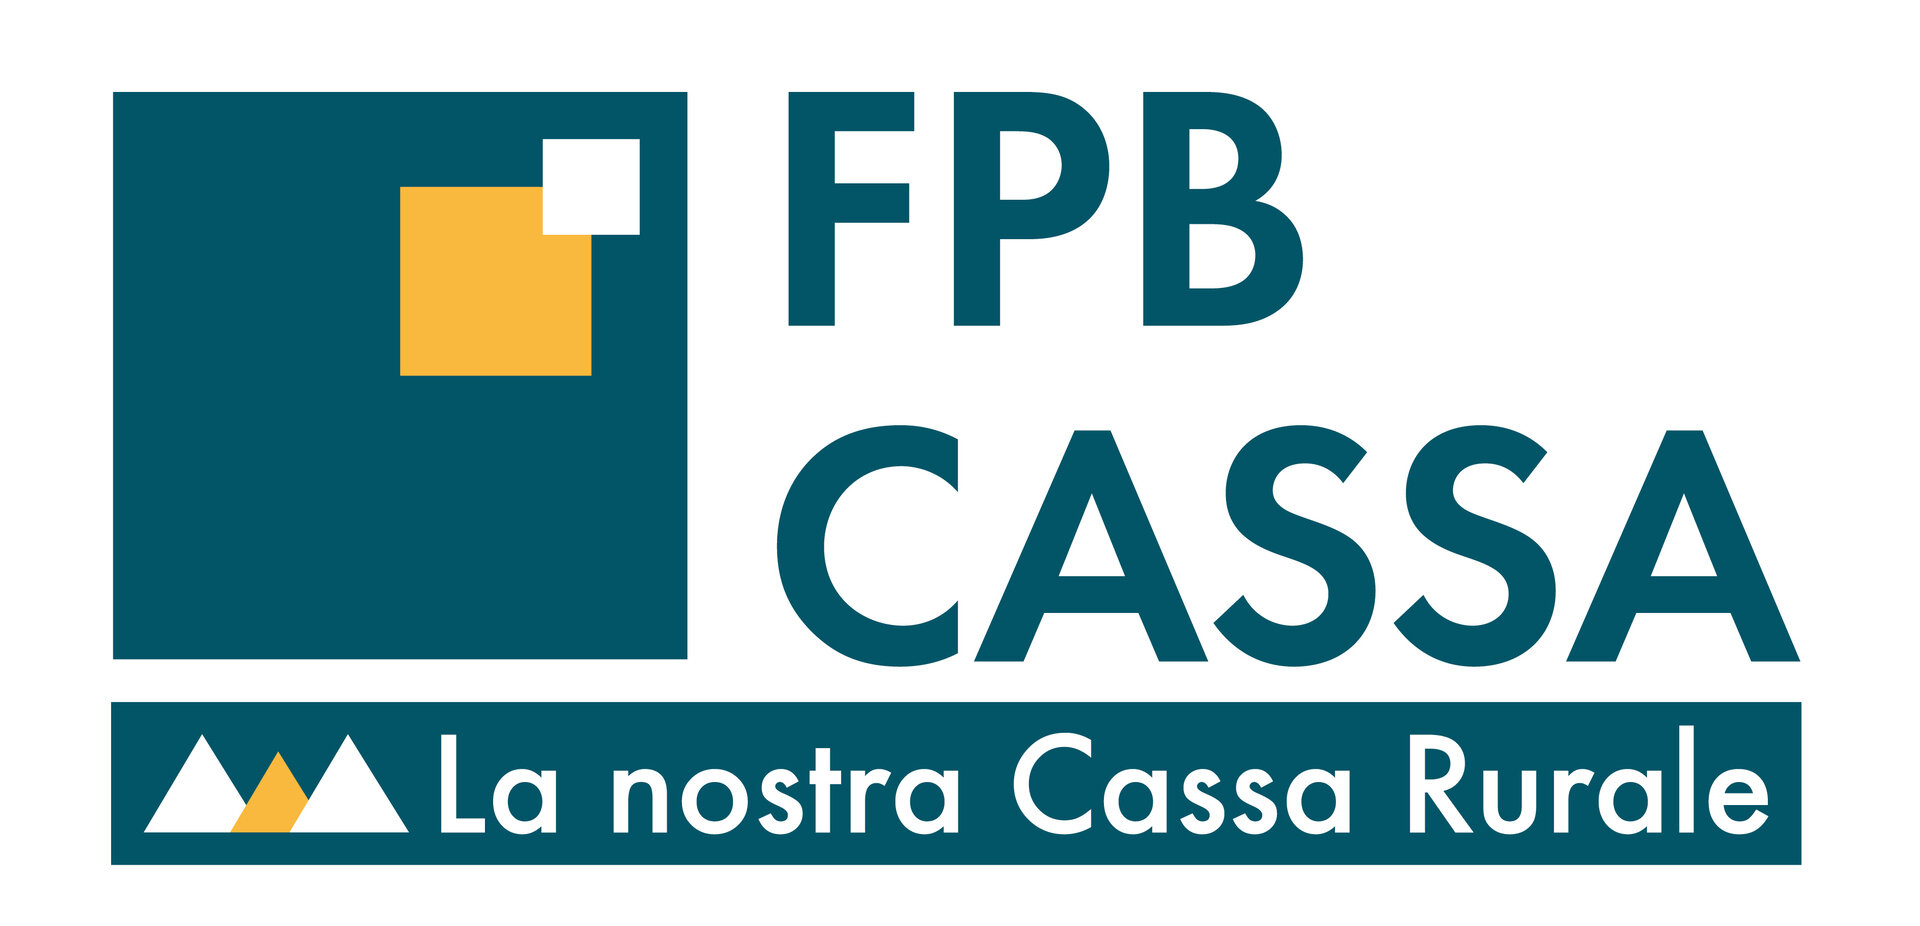 FPB Cassa Di Fassa Primiero Belluno   Branch Office Of Moena